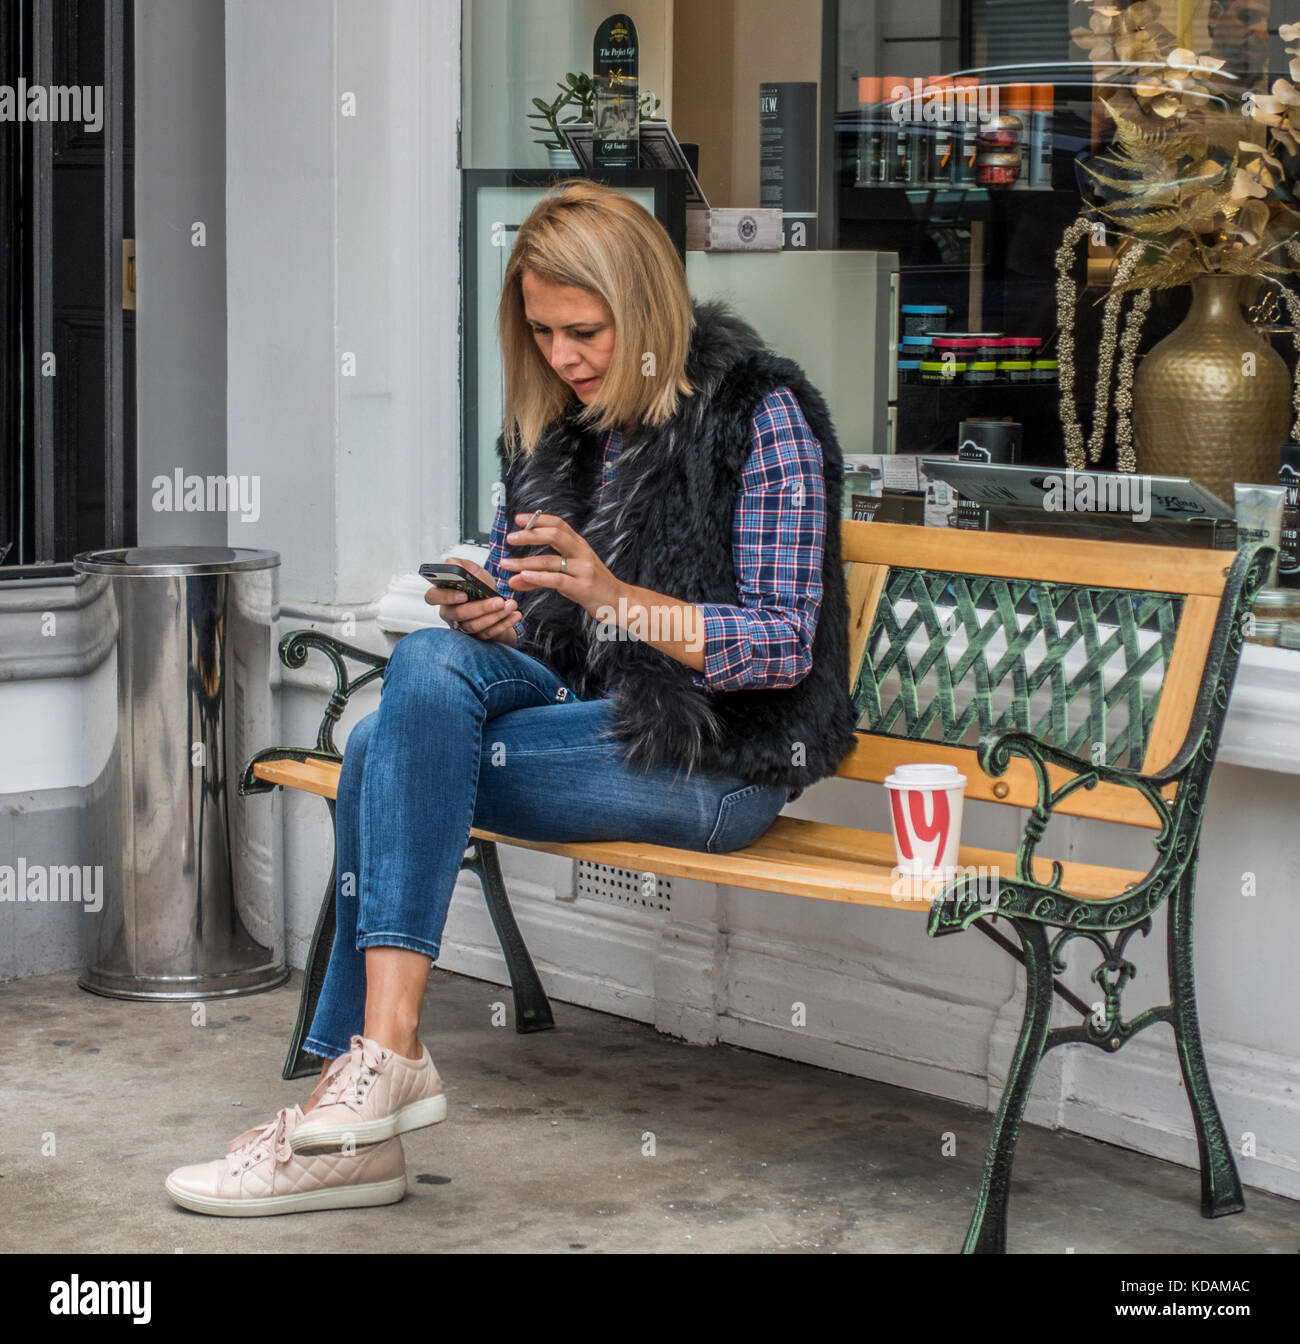 Beiläufig hübsche Frau gekleidet, sitzen im Schneidersitz auf einer Bank, mit einer Zigarette in der einen Hand und ein Handy in der anderen. London, England, UK. Stockfoto